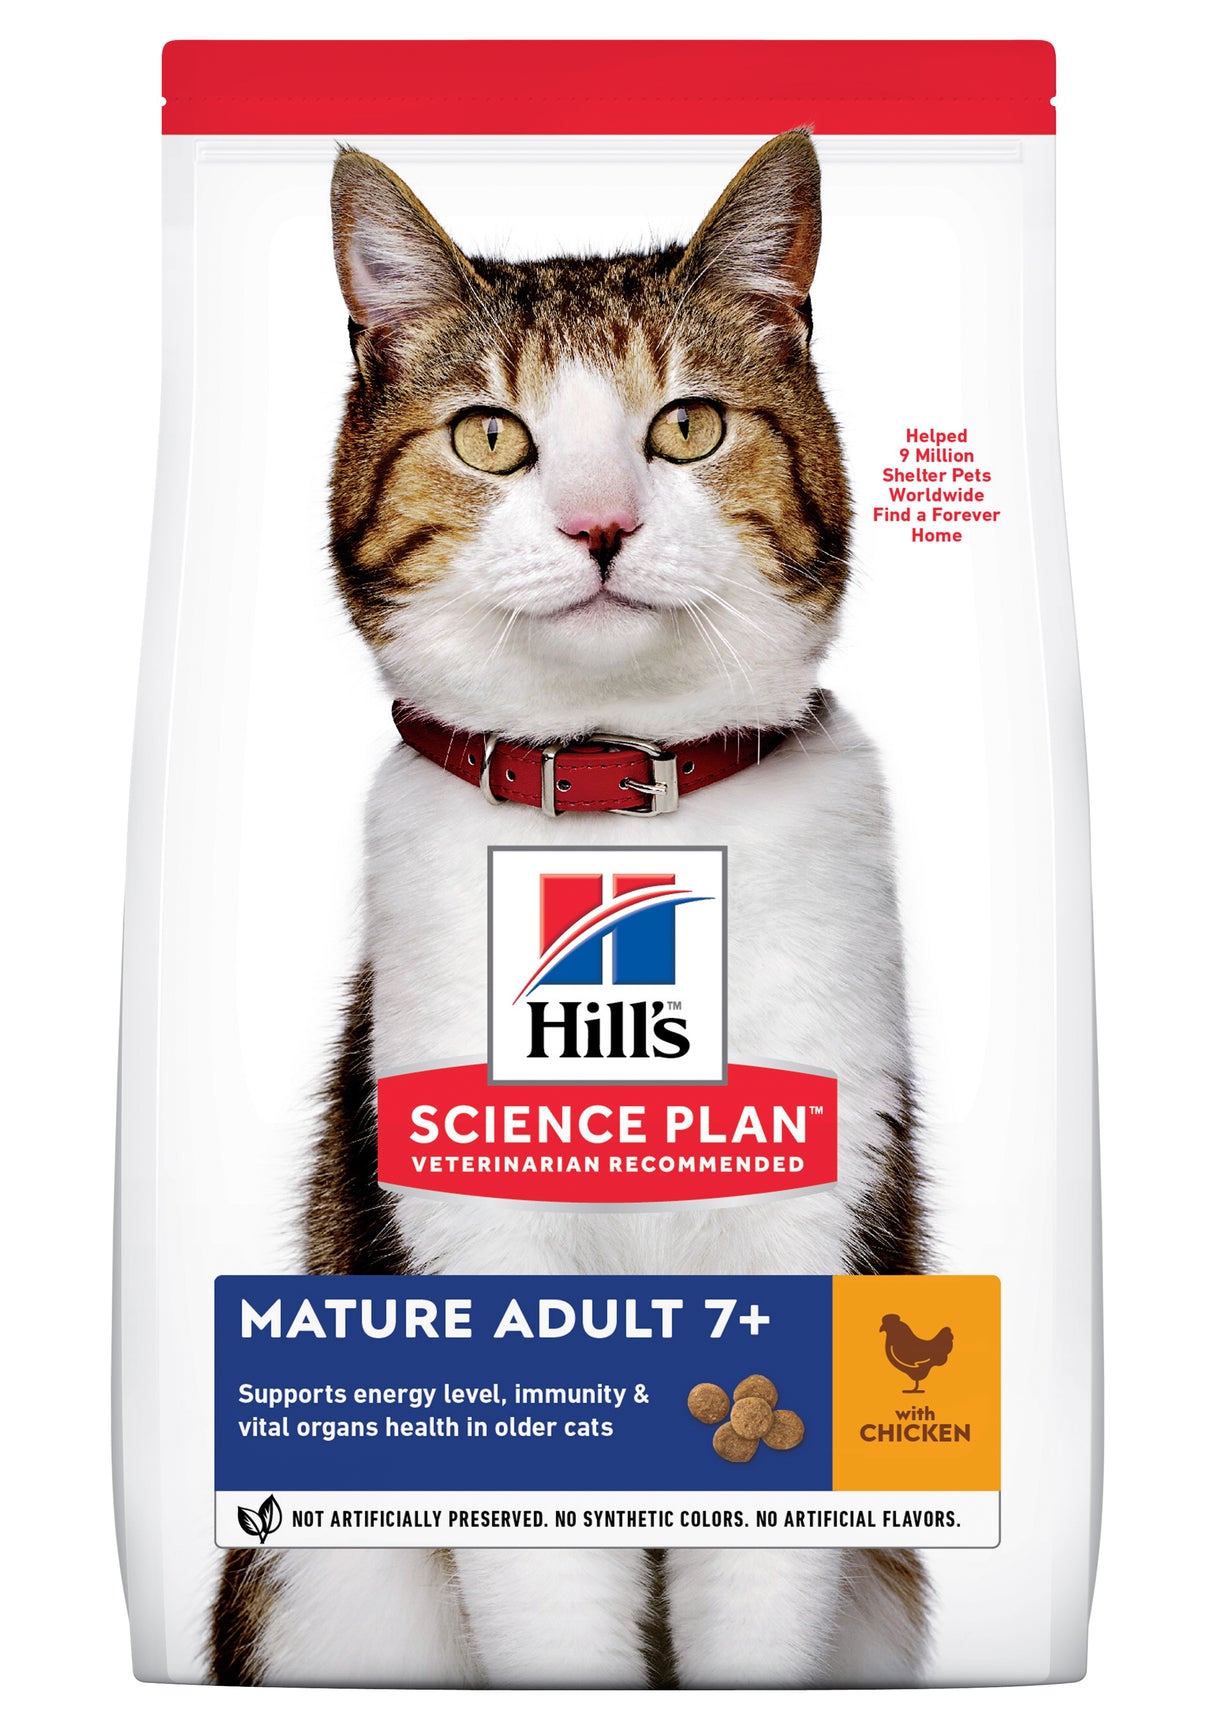 Beskrivelse: Hills Science Plan voksen/senior kattemad med kylling.